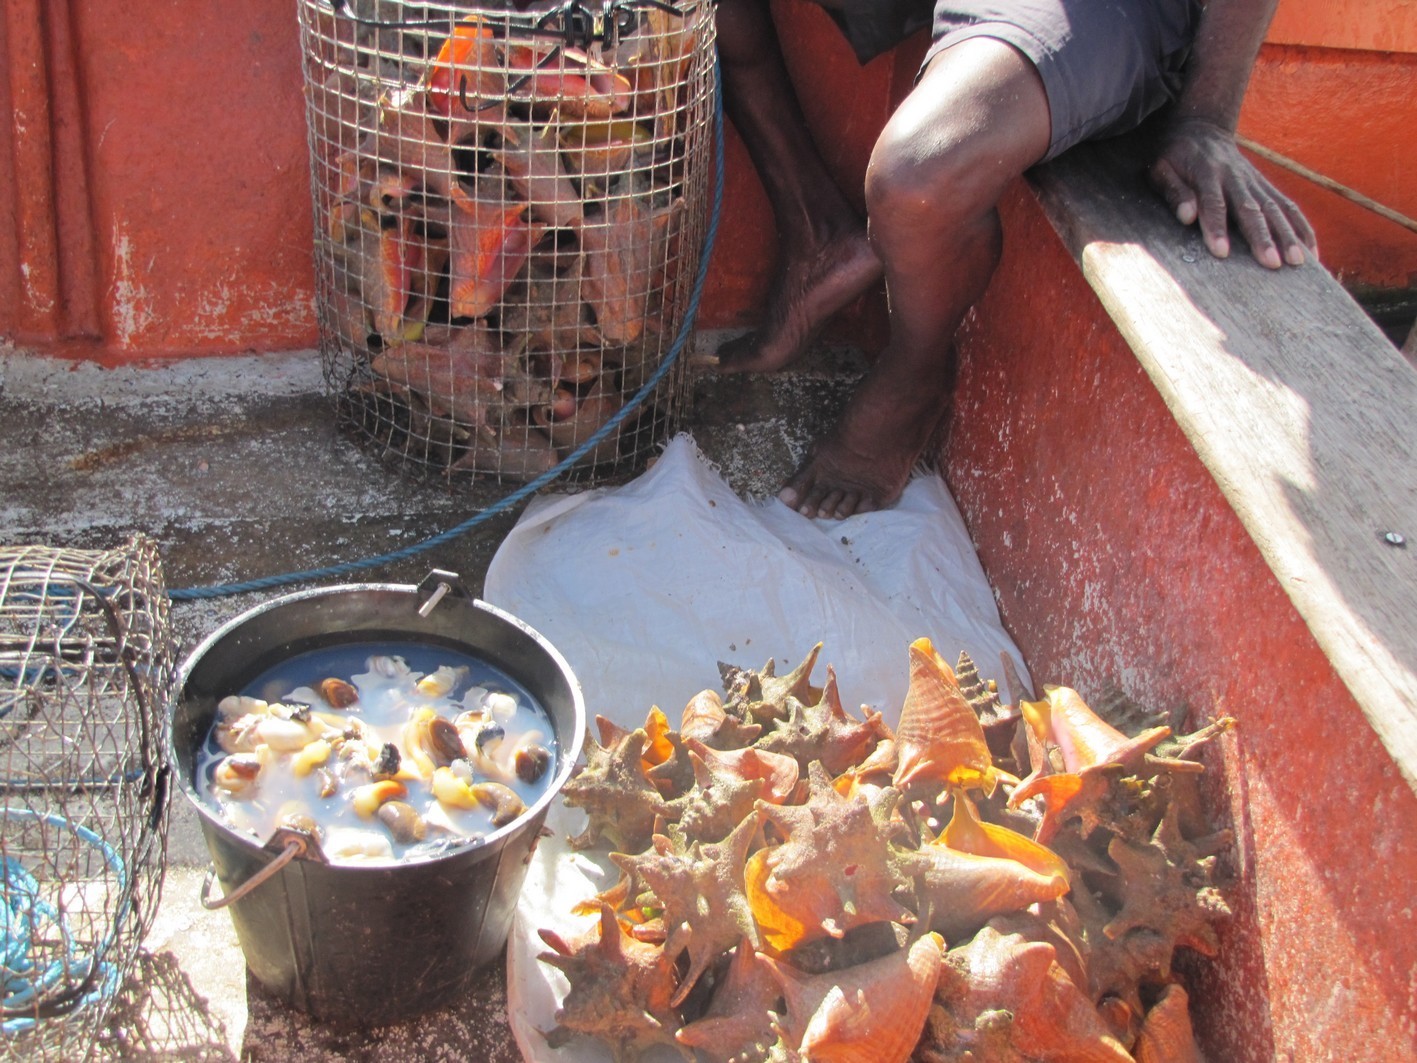     La pêche au lambi se poursuit en Guadeloupe mais son prix est parfois dissuasif

